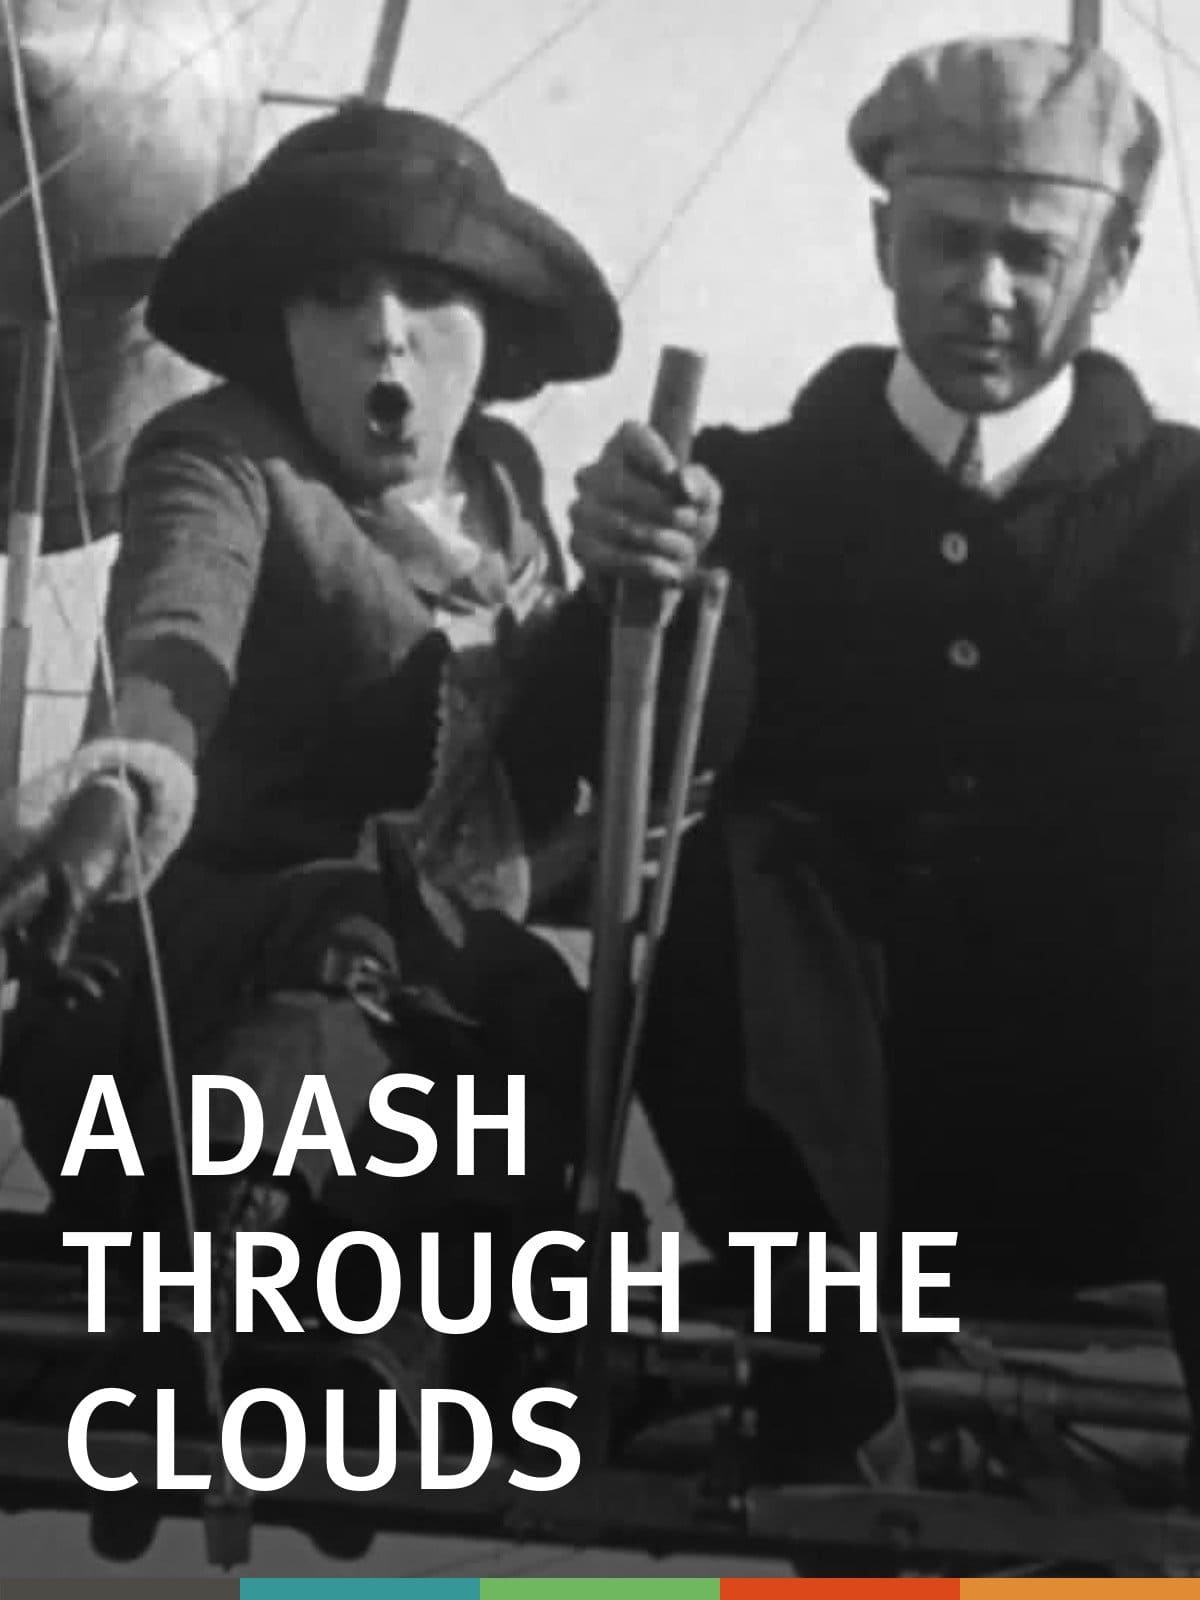 A Dash Through the Clouds (1912)